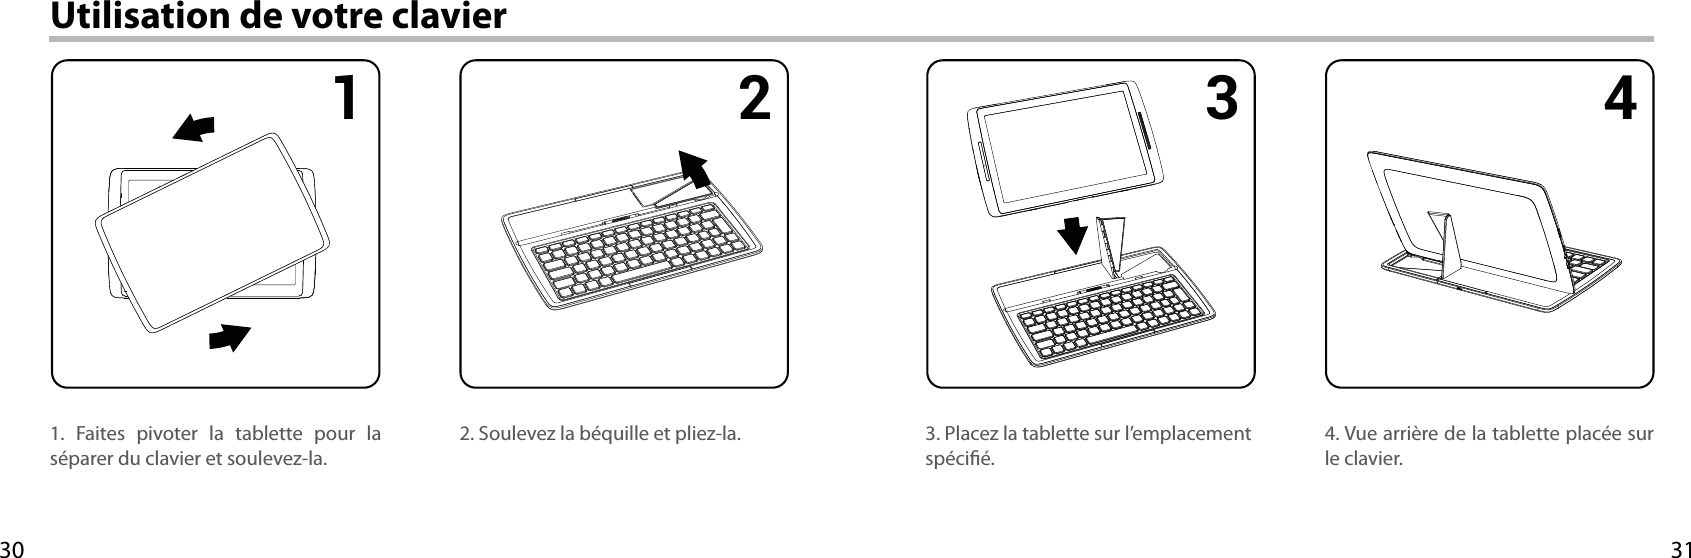 31301 2 3 4Utilisation de votre clavier1. Faites pivoter la tablette pour la séparer du clavier et soulevez-la.4. Vue arrière de la tablette placée sur le clavier.3. Placez la tablette sur l’emplacement spécié.2. Soulevez la béquille et pliez-la.